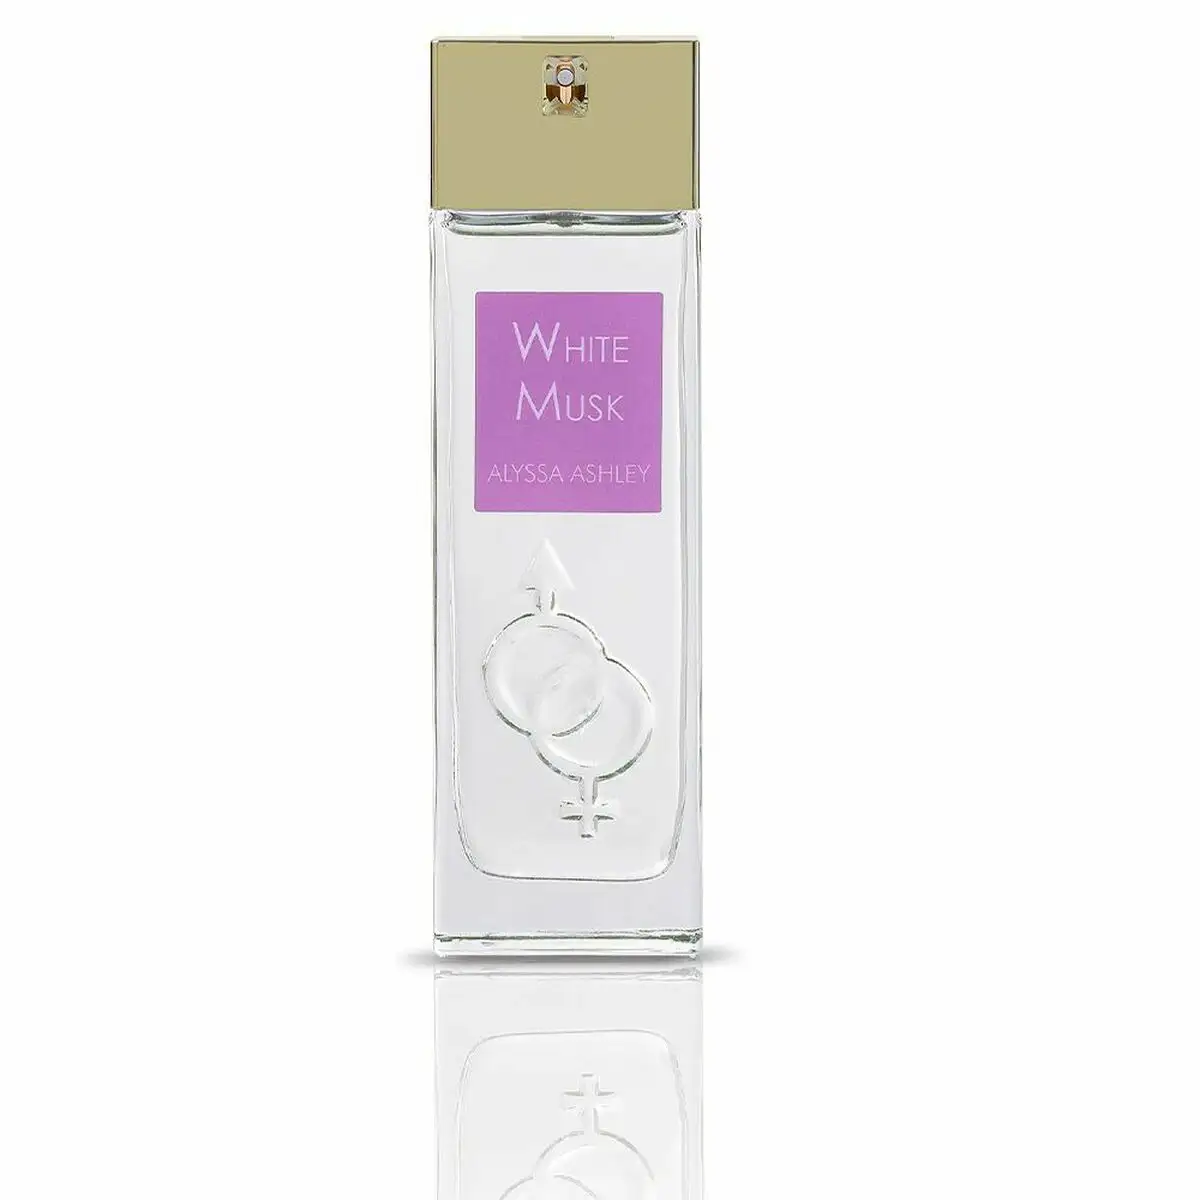 Parfum unisexe alyssa ashley white musk edp white musk 100 ml_3423. DIAYTAR SENEGAL - Où Choisir est un Plaisir. Explorez notre boutique en ligne et choisissez parmi des produits de qualité qui satisferont vos besoins et vos goûts.